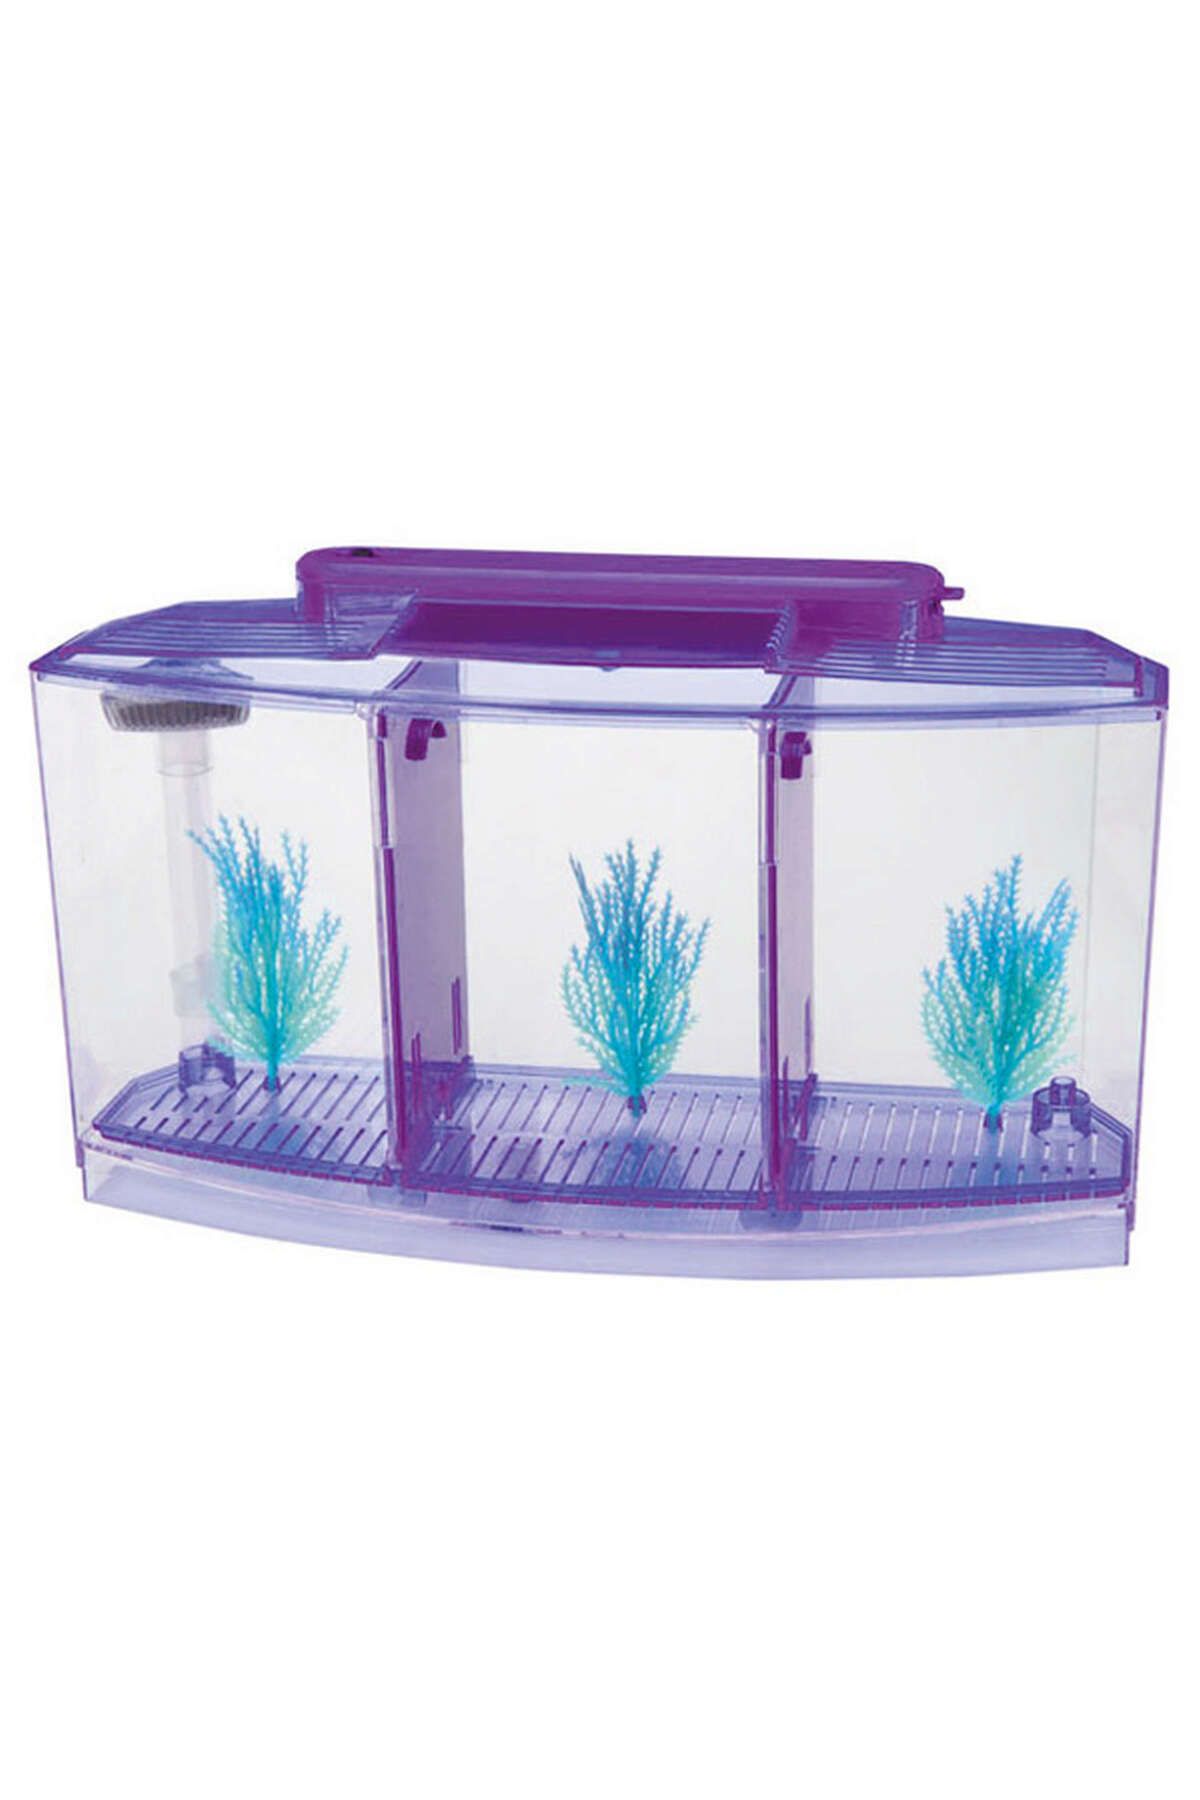 Фильтр для аквариума для петушка. Аквариум Box Betta 1.3. Специальные аквариумы для петушков.